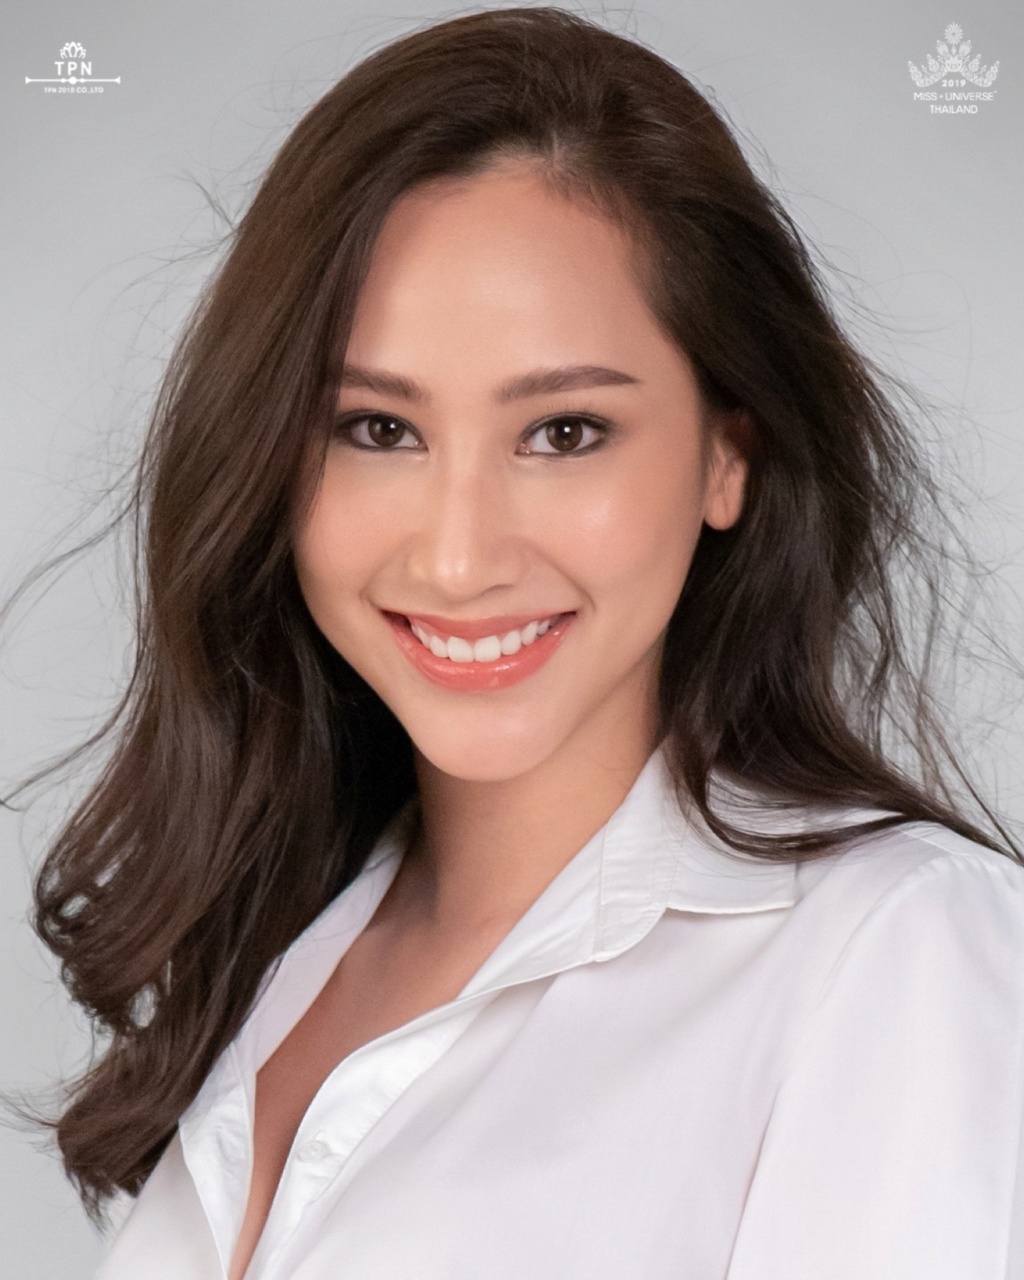 Miss Universe THAILAND 2019 - PORTRAITS!  - Page 2 3733